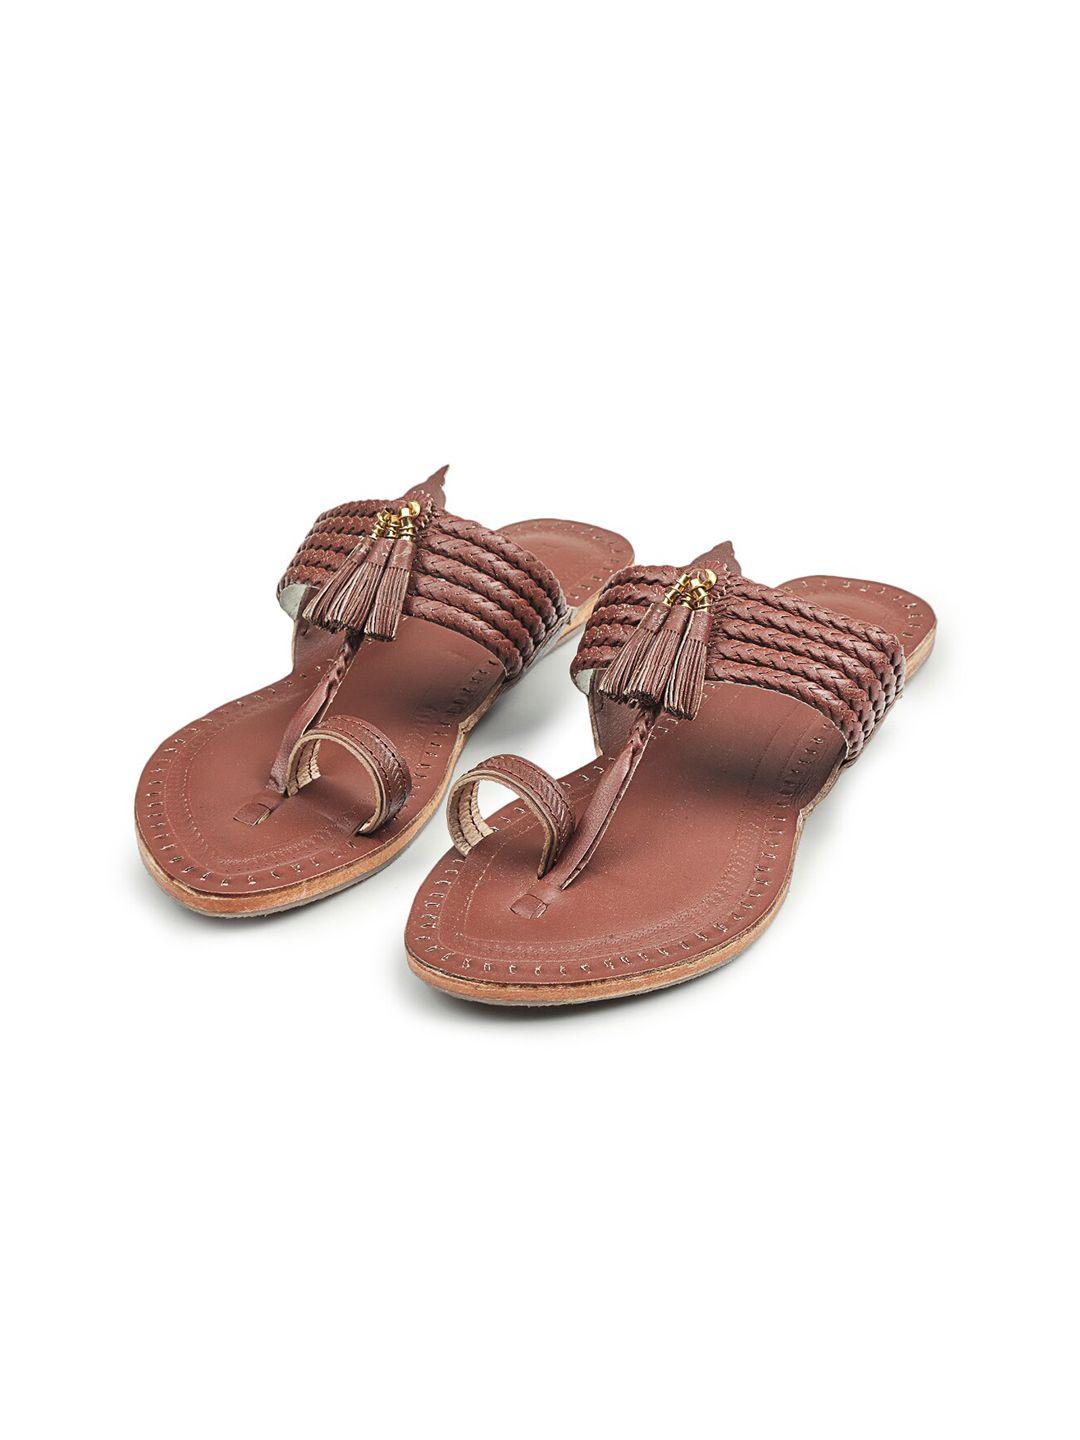 korakari textured tasselled leather ethnic one toe flats